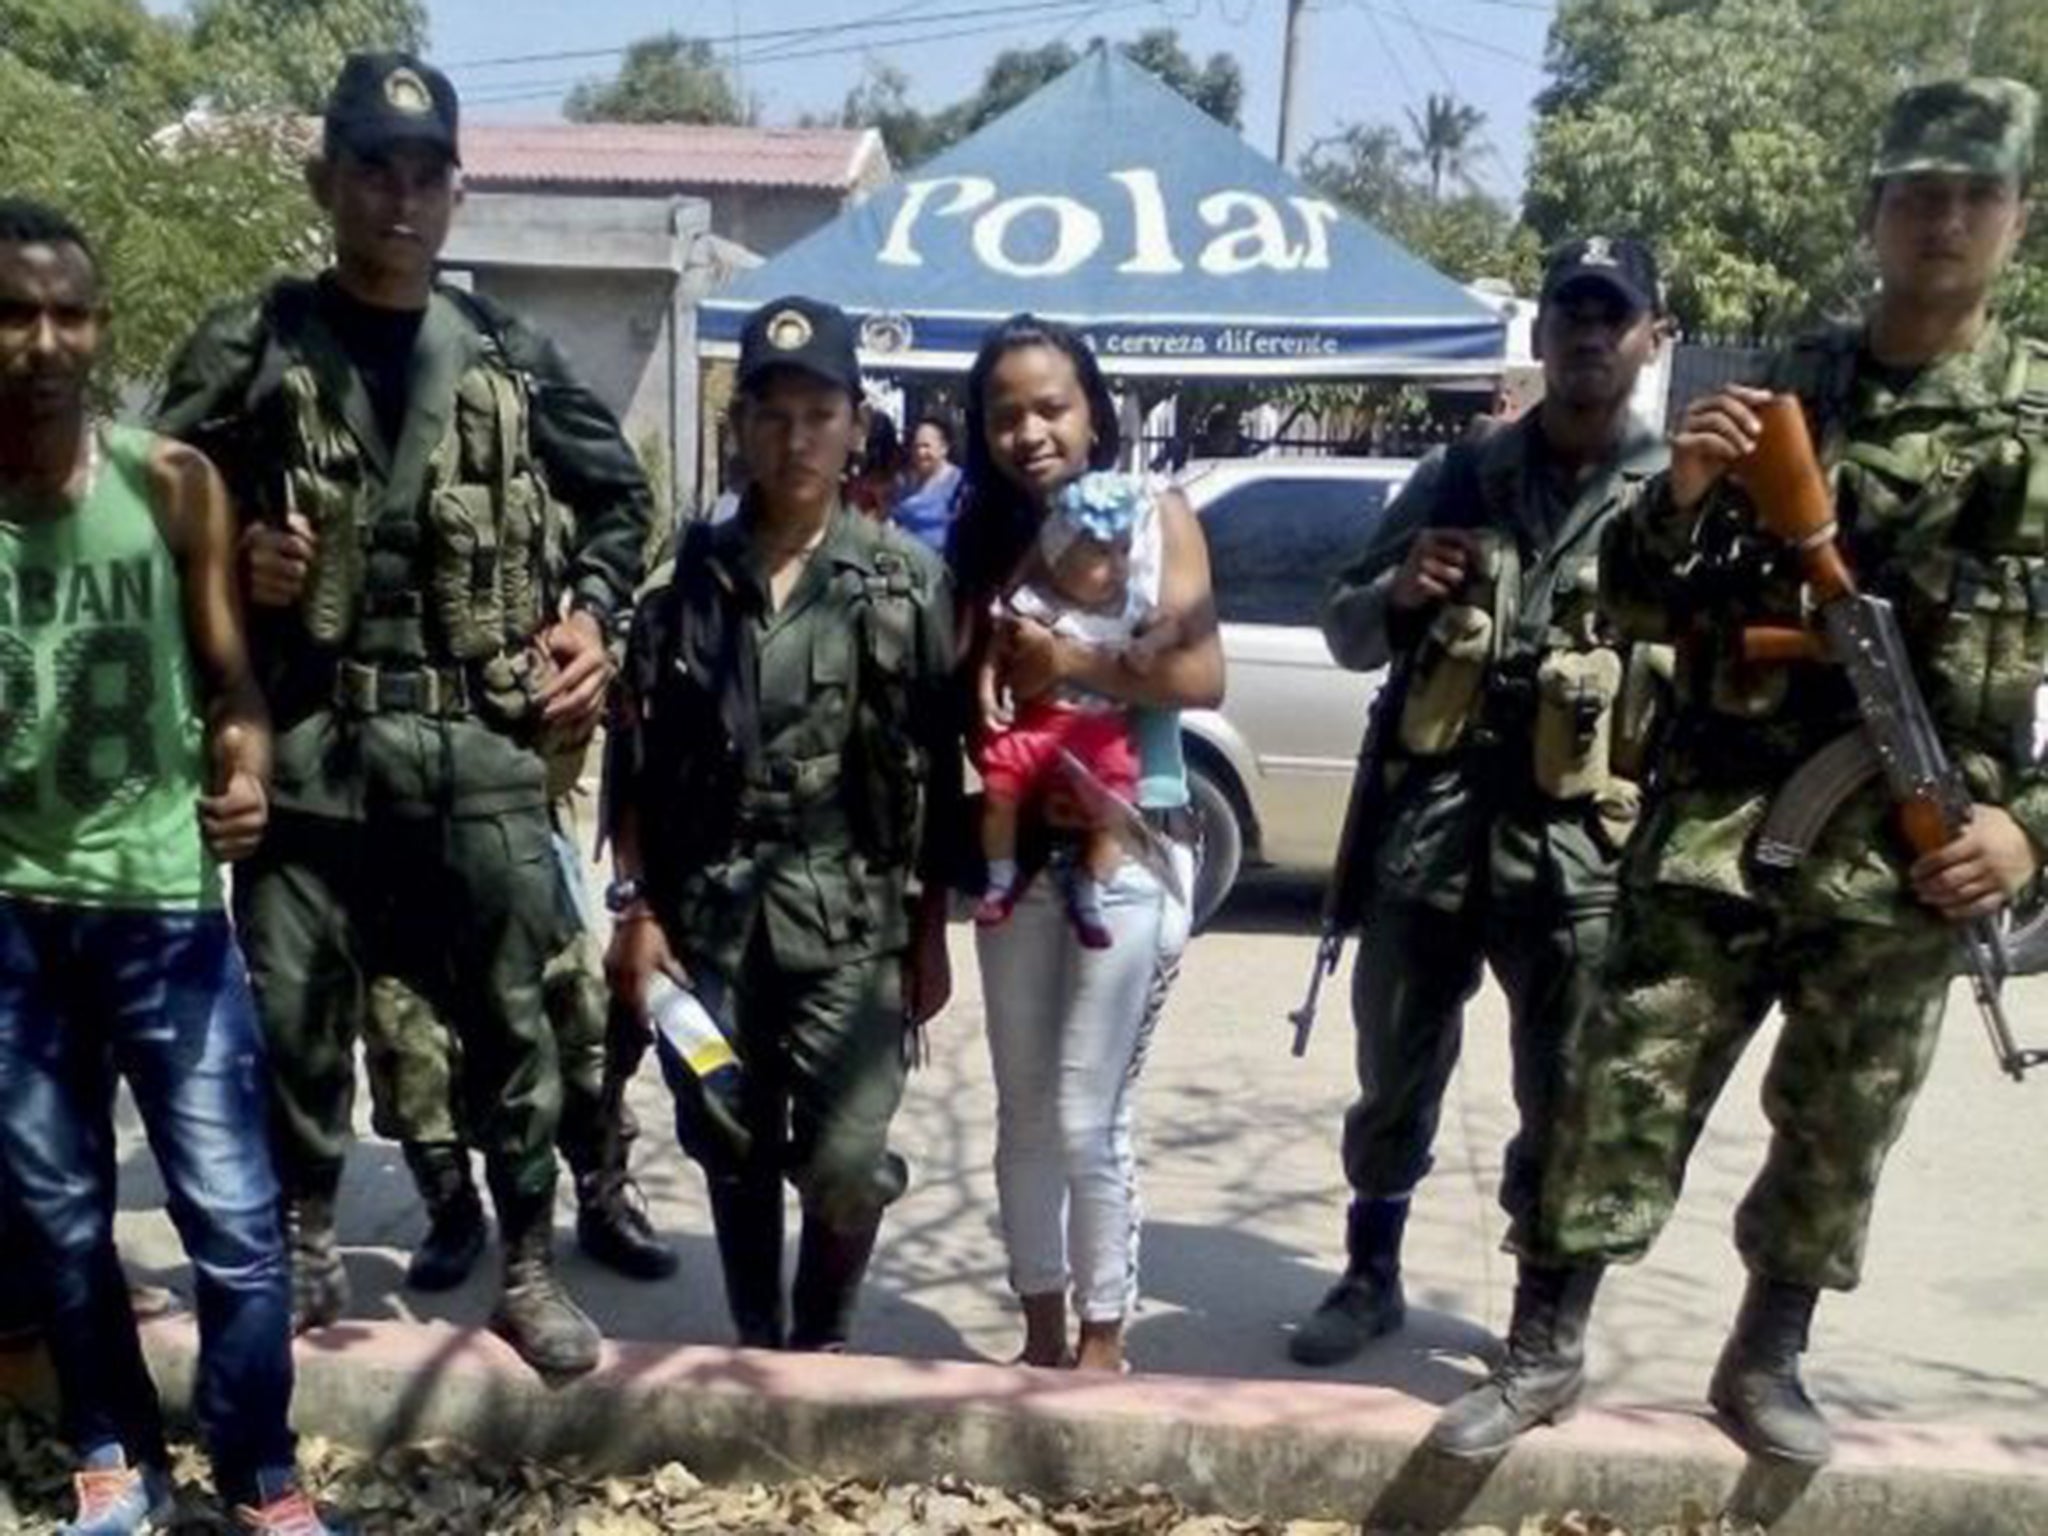 Colombian FARC leftist guerrillas pose for a photo in the village of El Conejo, La Guajira